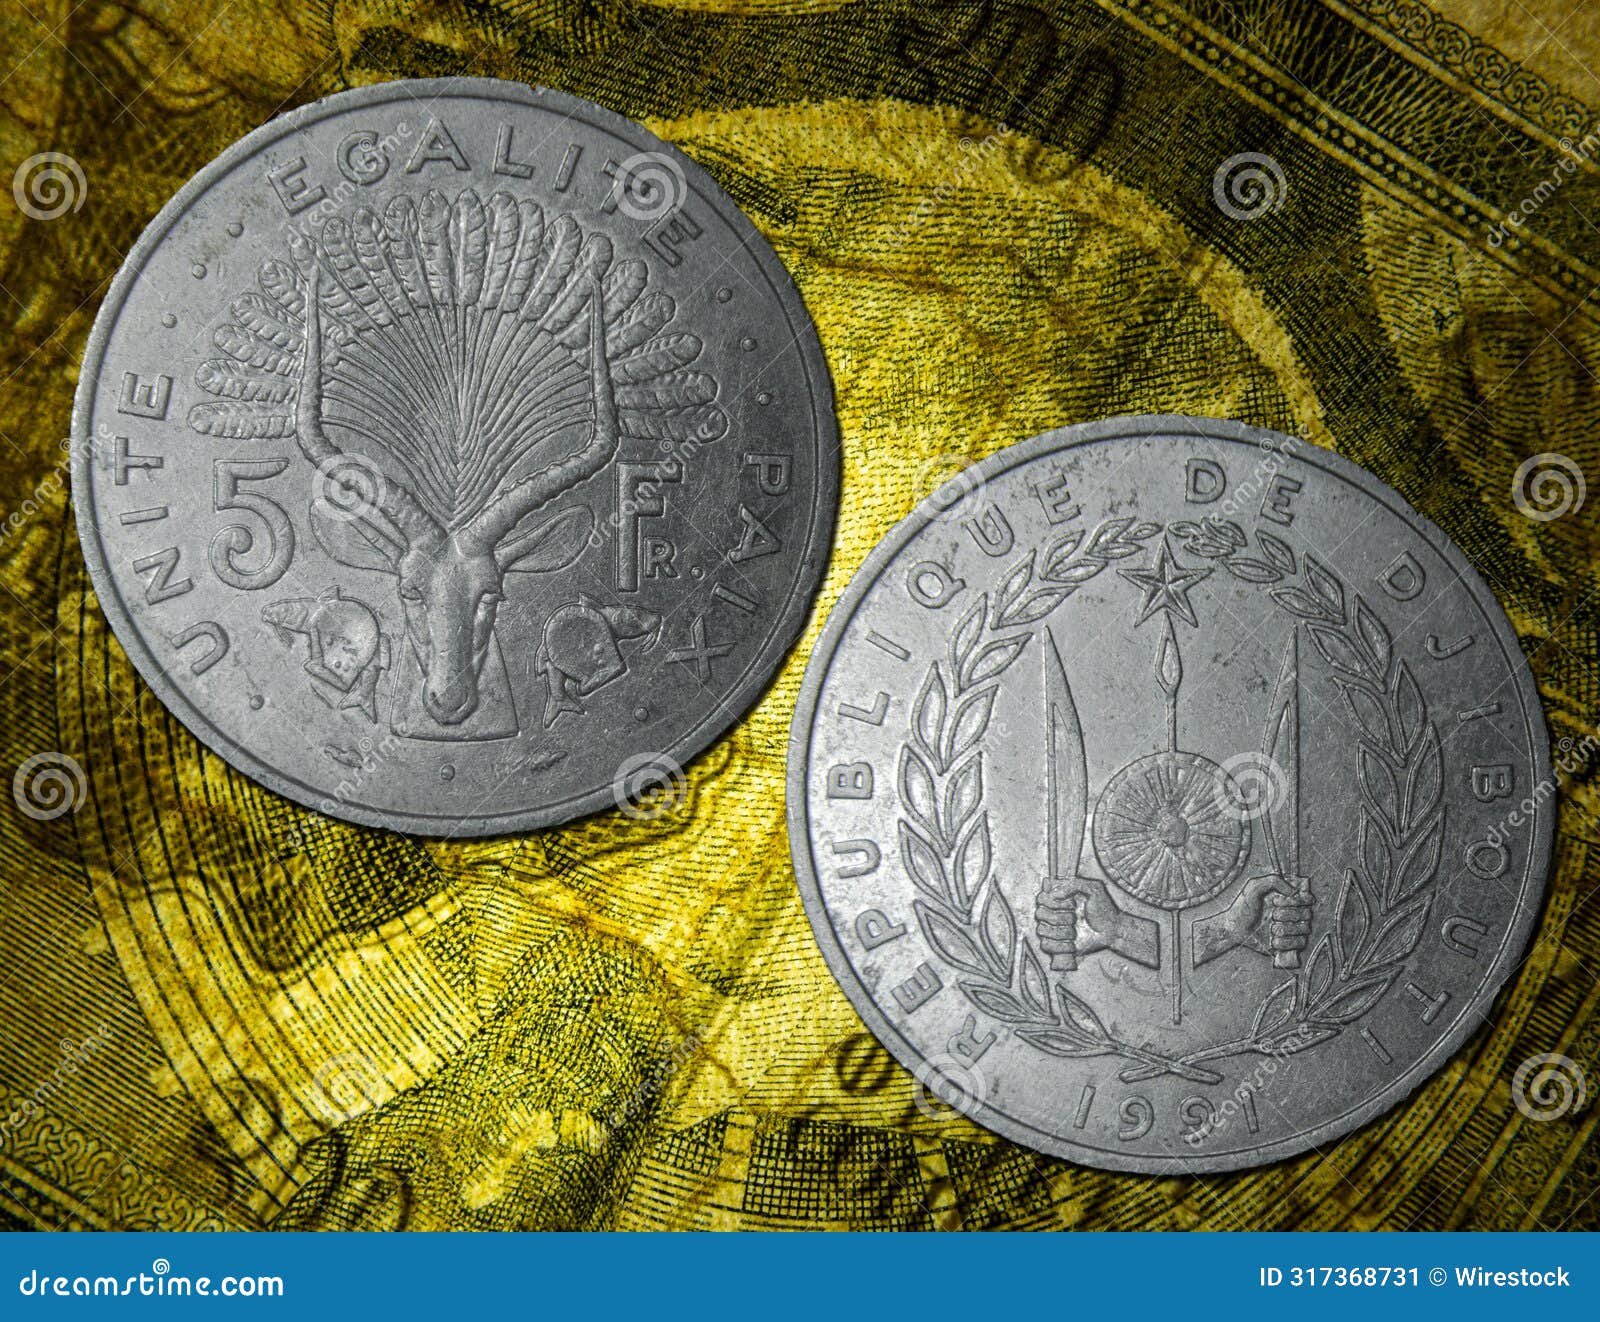 republic of djibouti franc coin